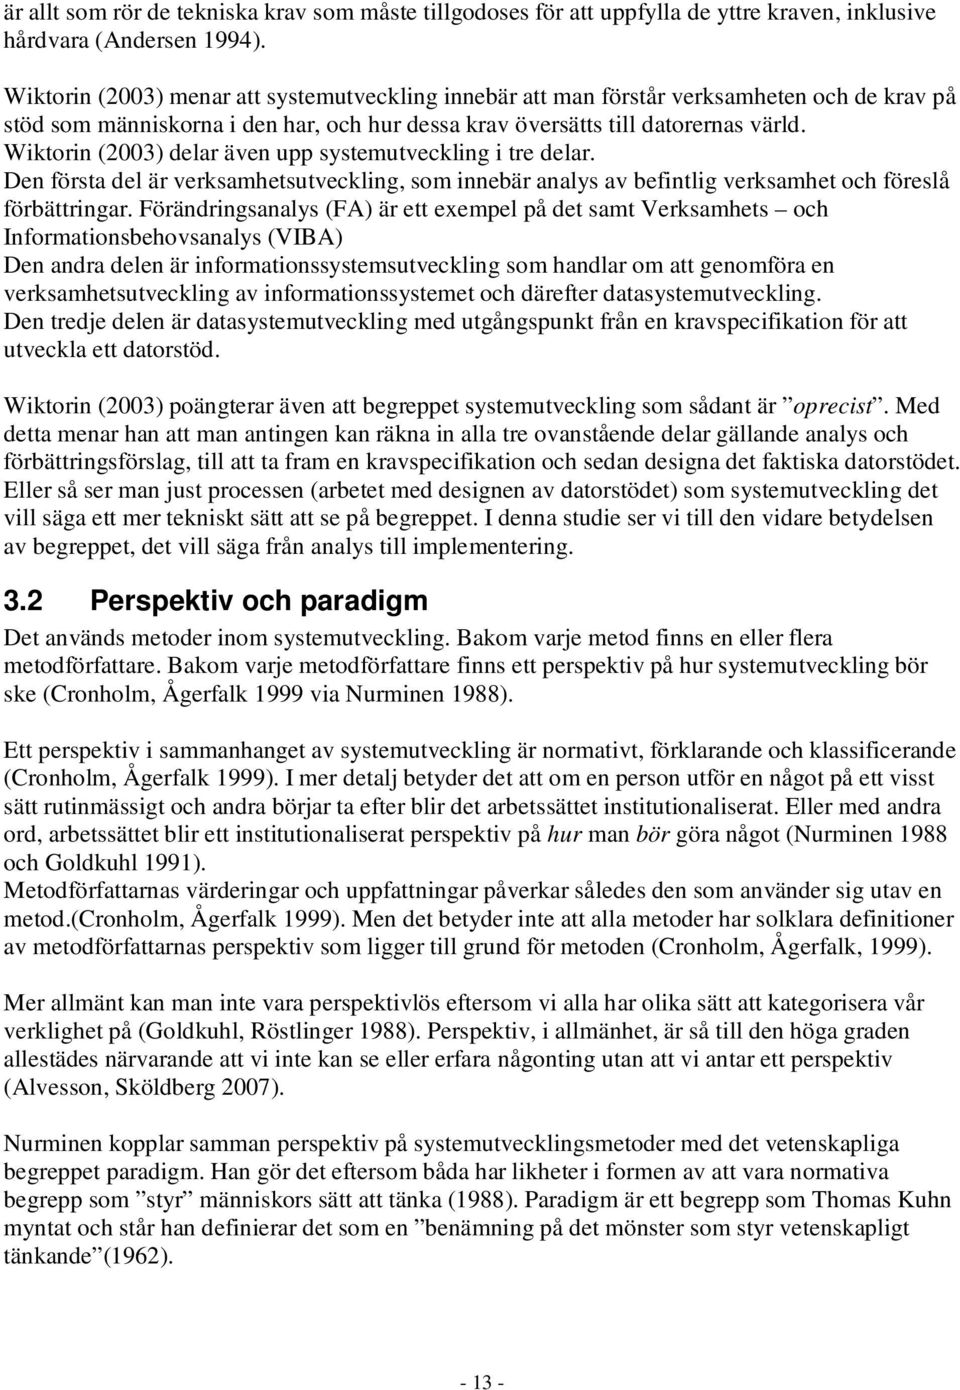 Wiktorin (2003) delar även upp systemutveckling i tre delar. Den första del är verksamhetsutveckling, som innebär analys av befintlig verksamhet och föreslå förbättringar.